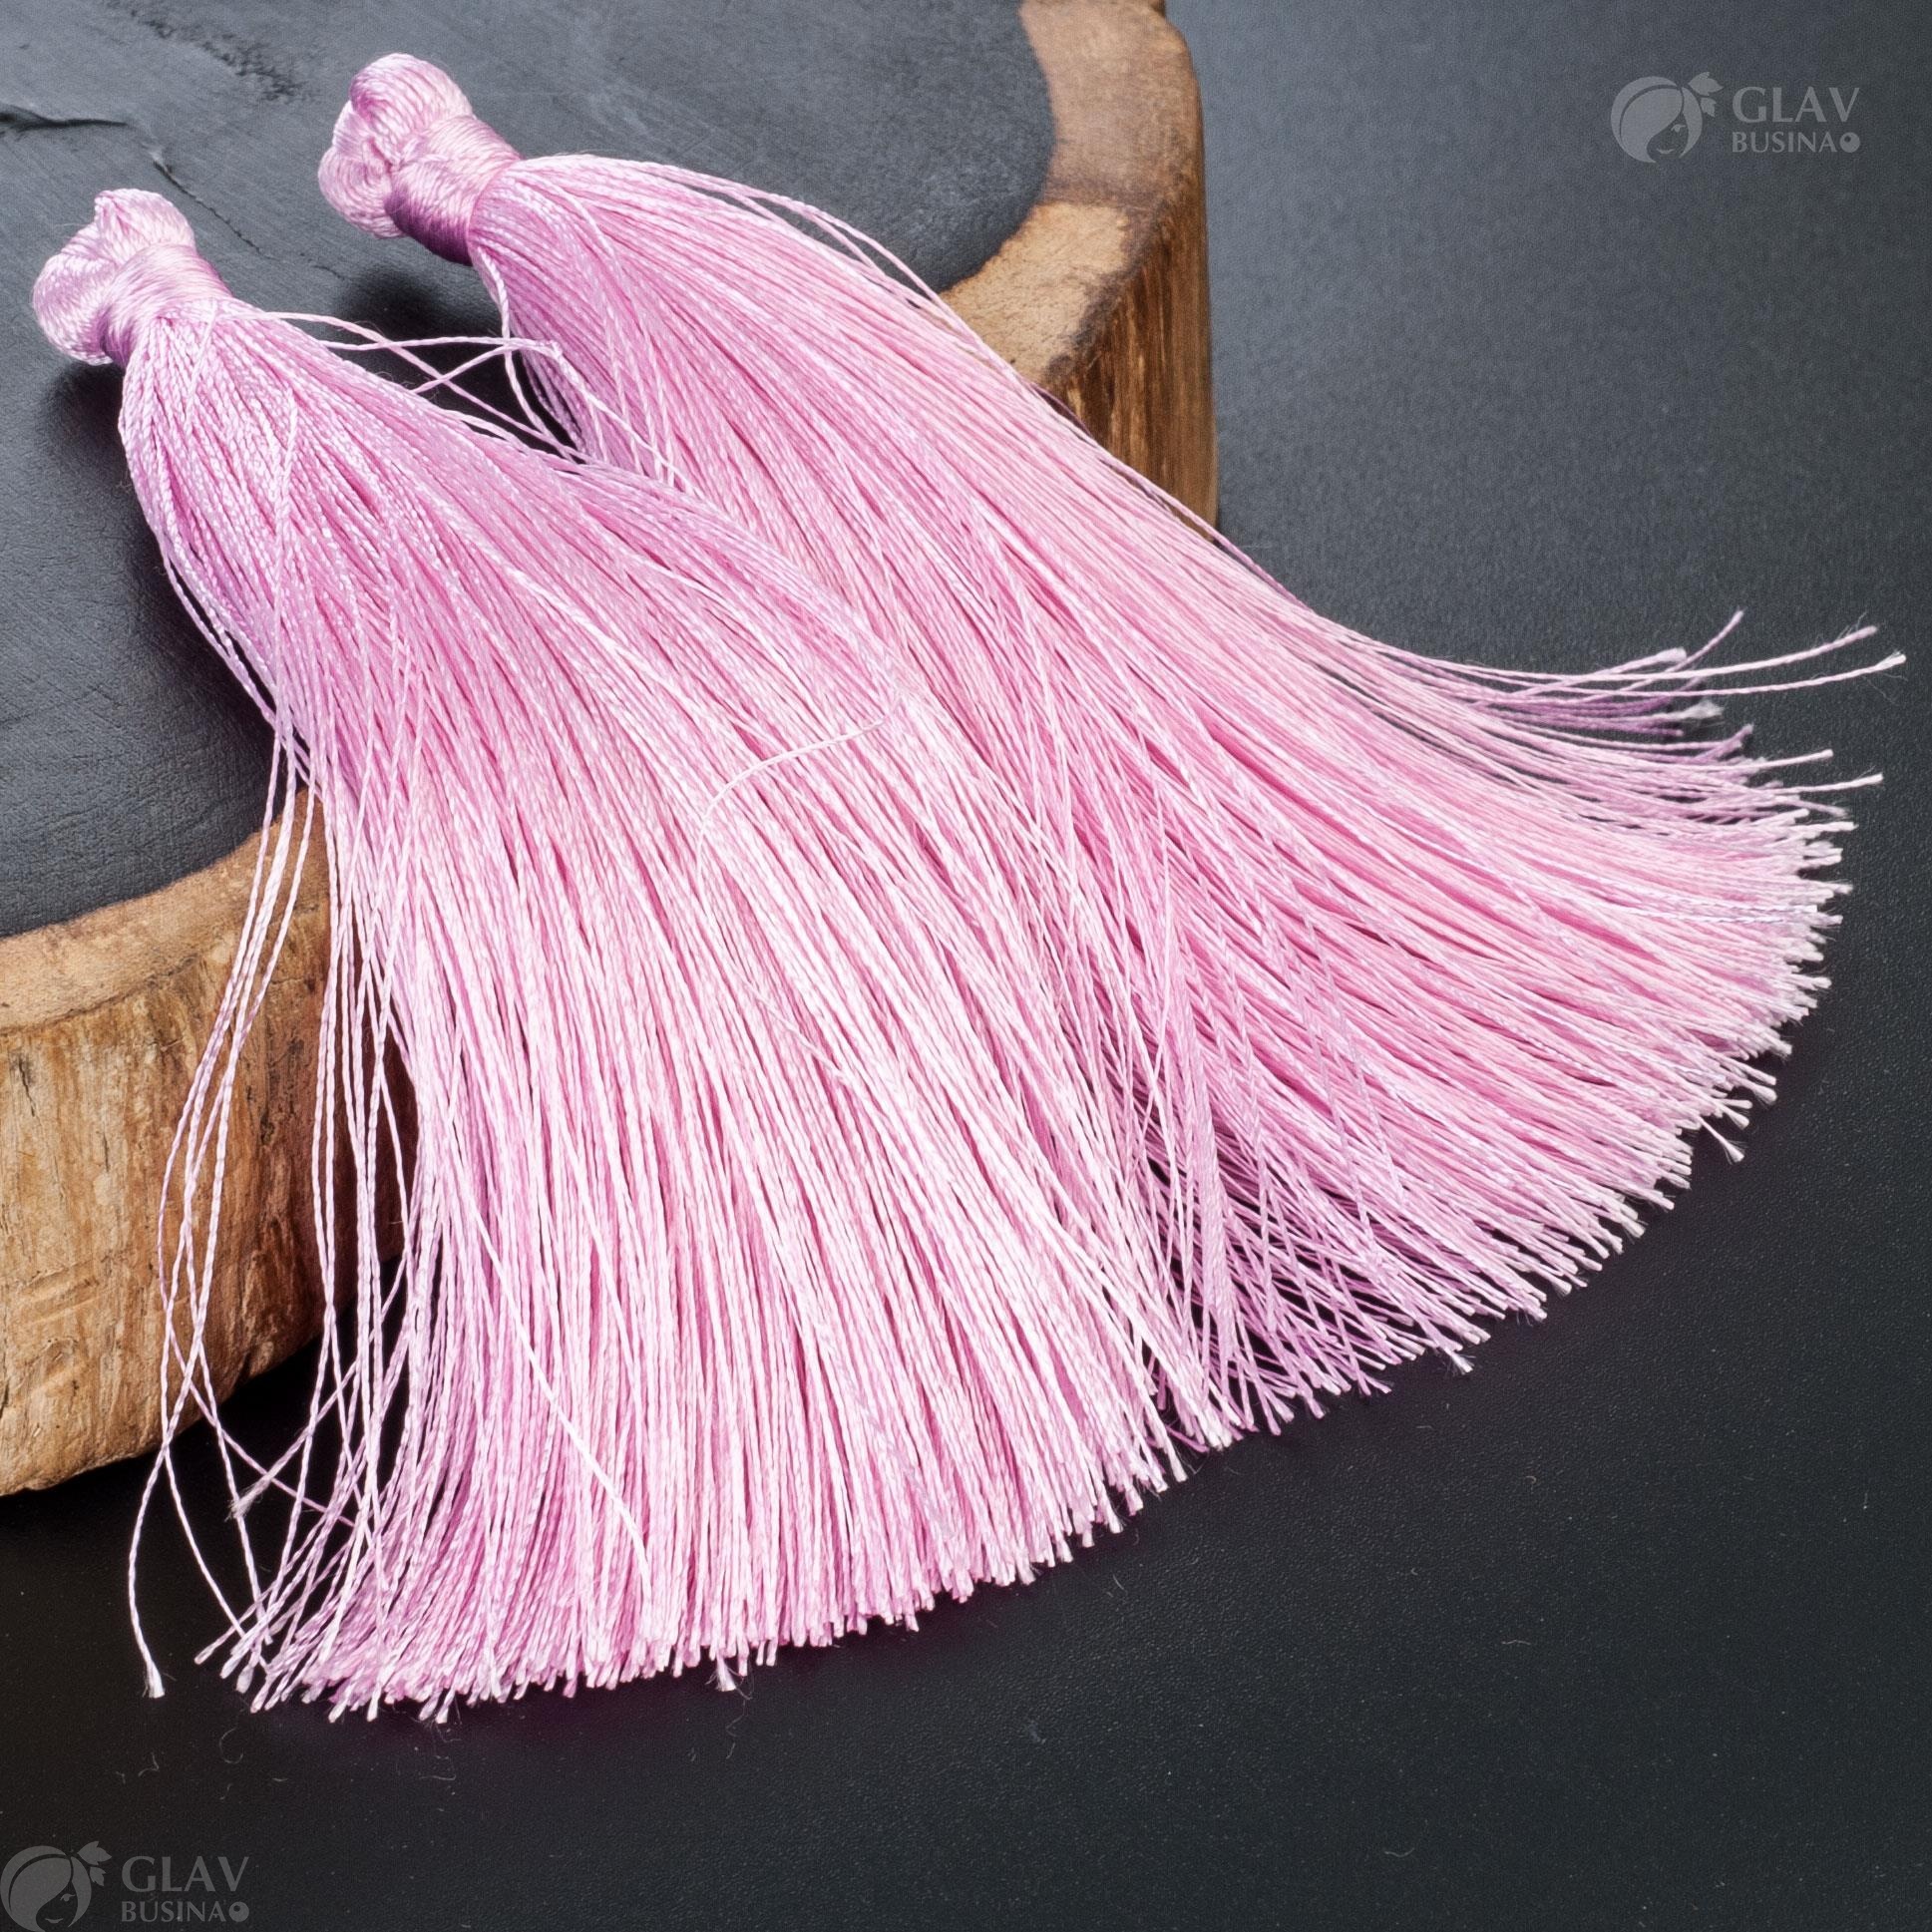 Шелковистая розовая кисточка для украшений, блестящая и пышная, размером 90х8мм, весом 2.8г, многофункциональная для сережек, колье, браслетов, декора предметов.